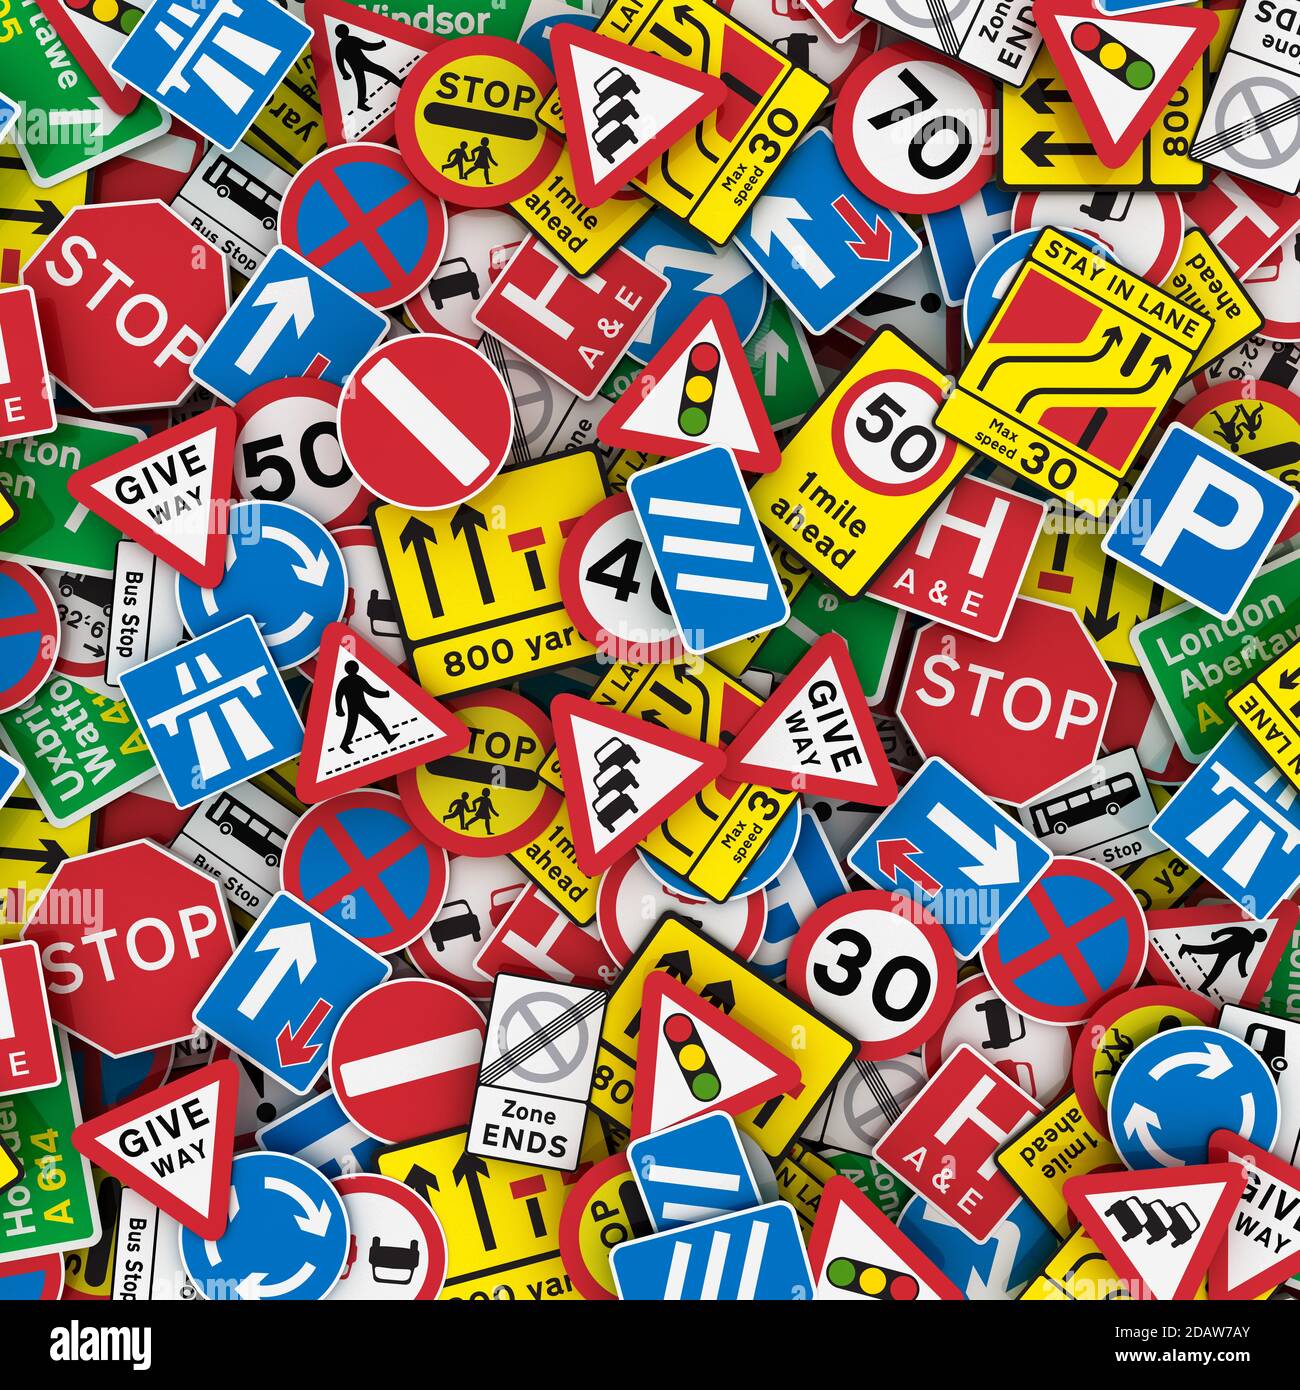 Extra große 3D-Darstellung von britischen Straßenschildern wie Stoppschildern, Geschwindigkeitsbegrenzungsschildern und Warnschildern. Stockfoto